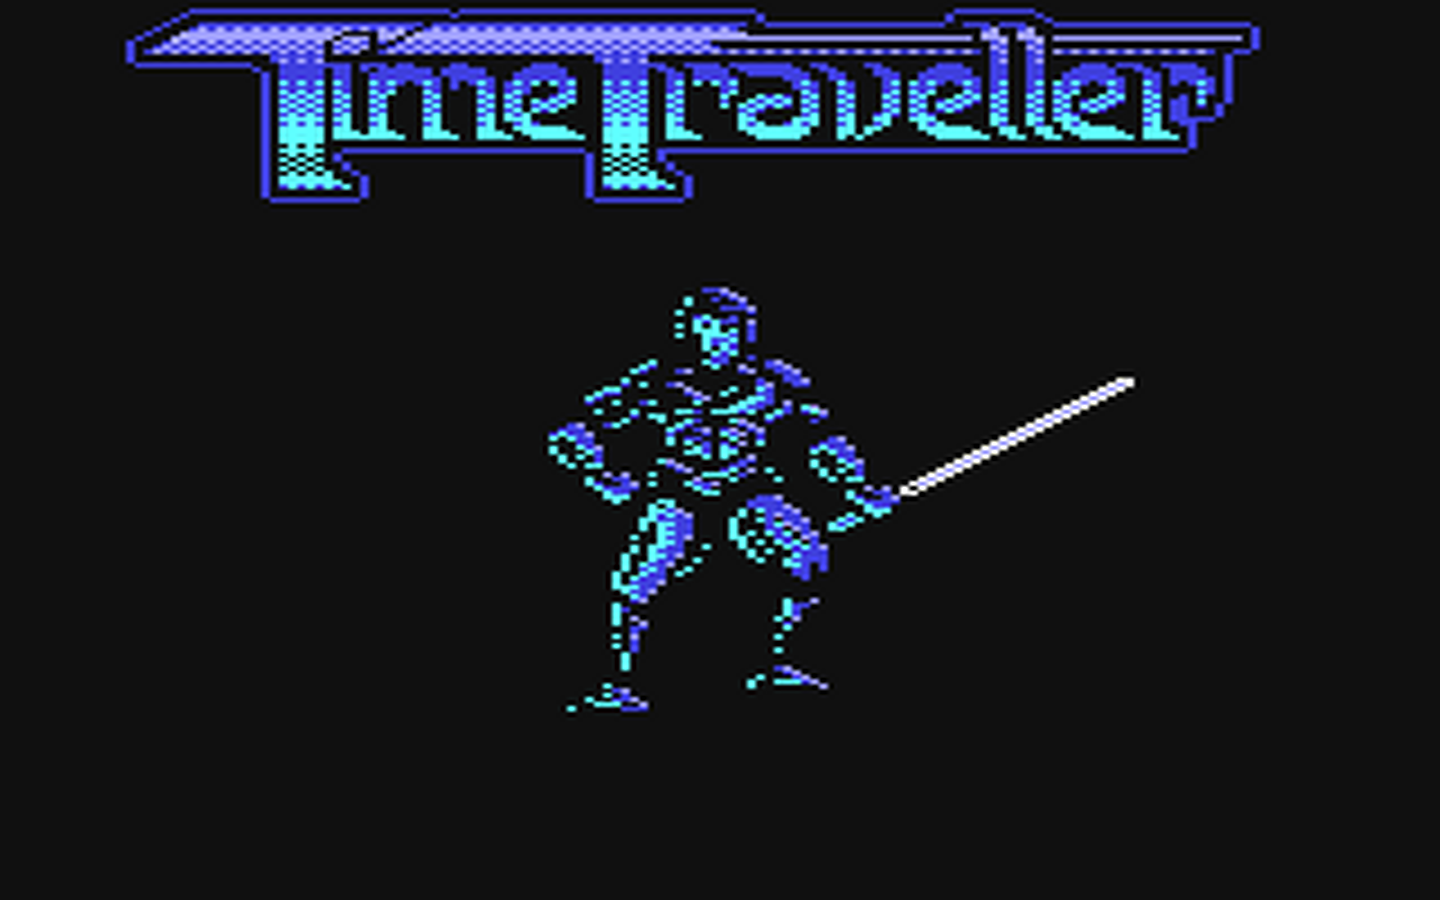 C64 GameBase Time_Traveller Mindscape,_Inc./Light_Fantastic 1989